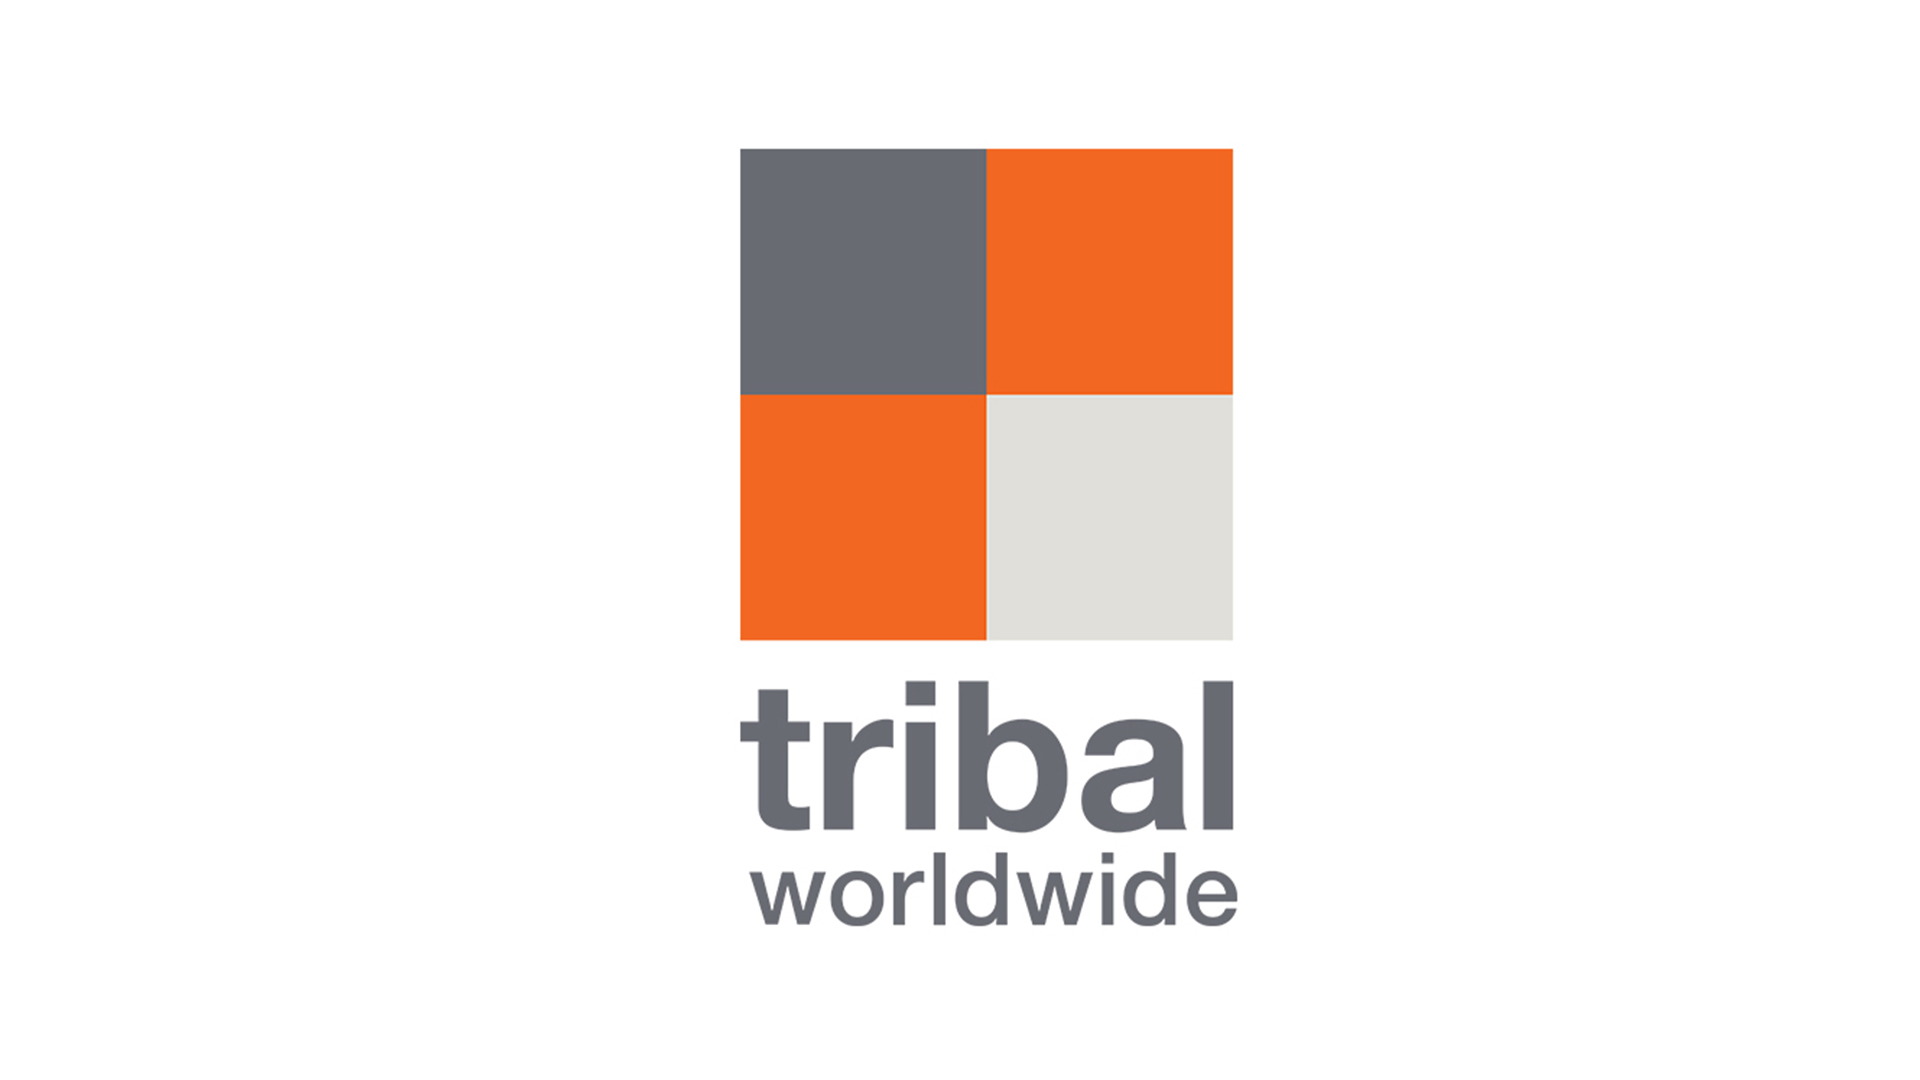 Tribal Worldwide logo